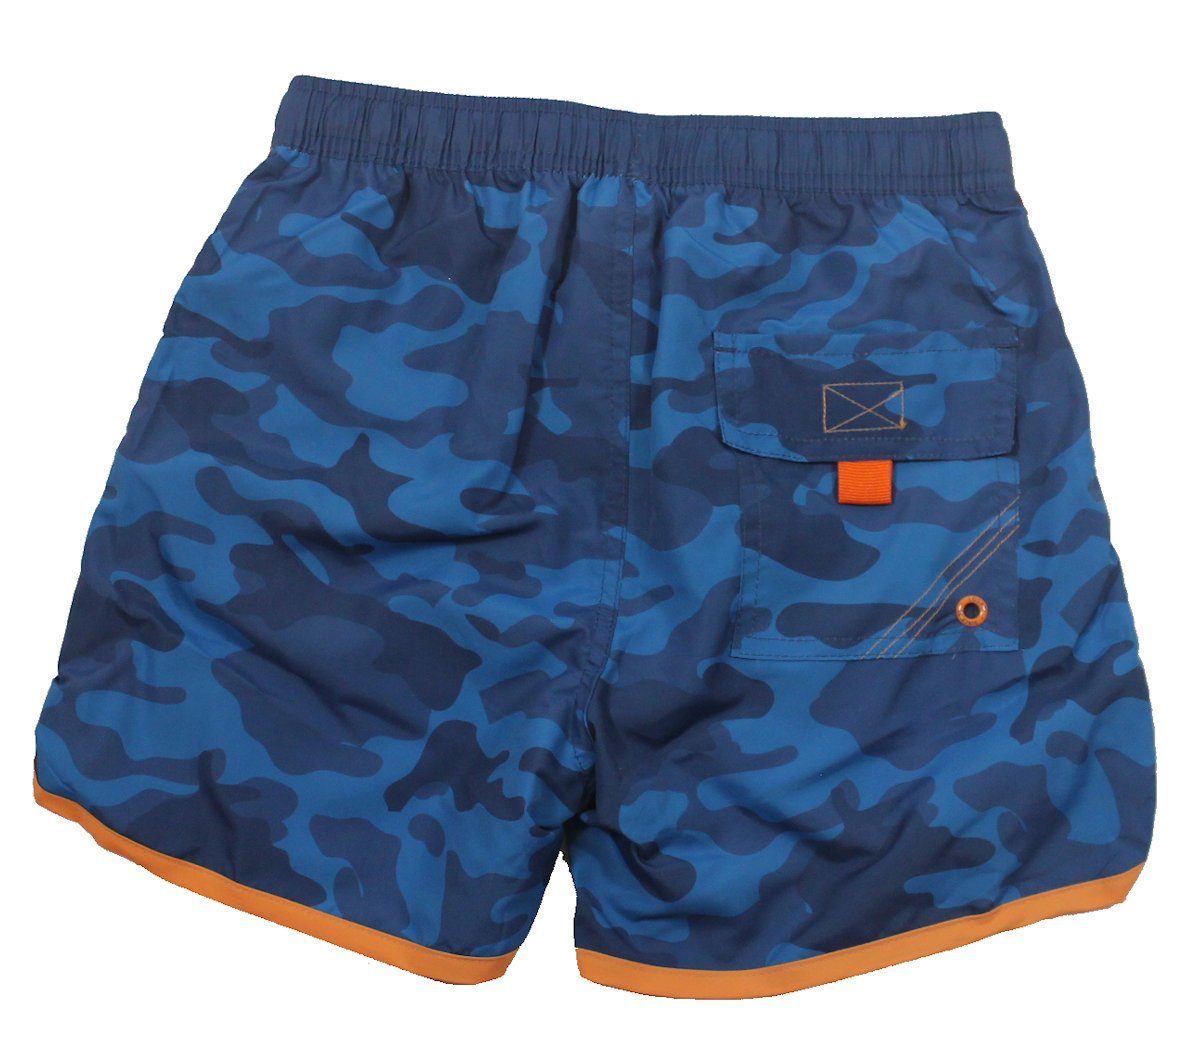 LOSAN Badeshorts Losan Boardshorts Camouflage Schwimmshorts Badehose blau  orange